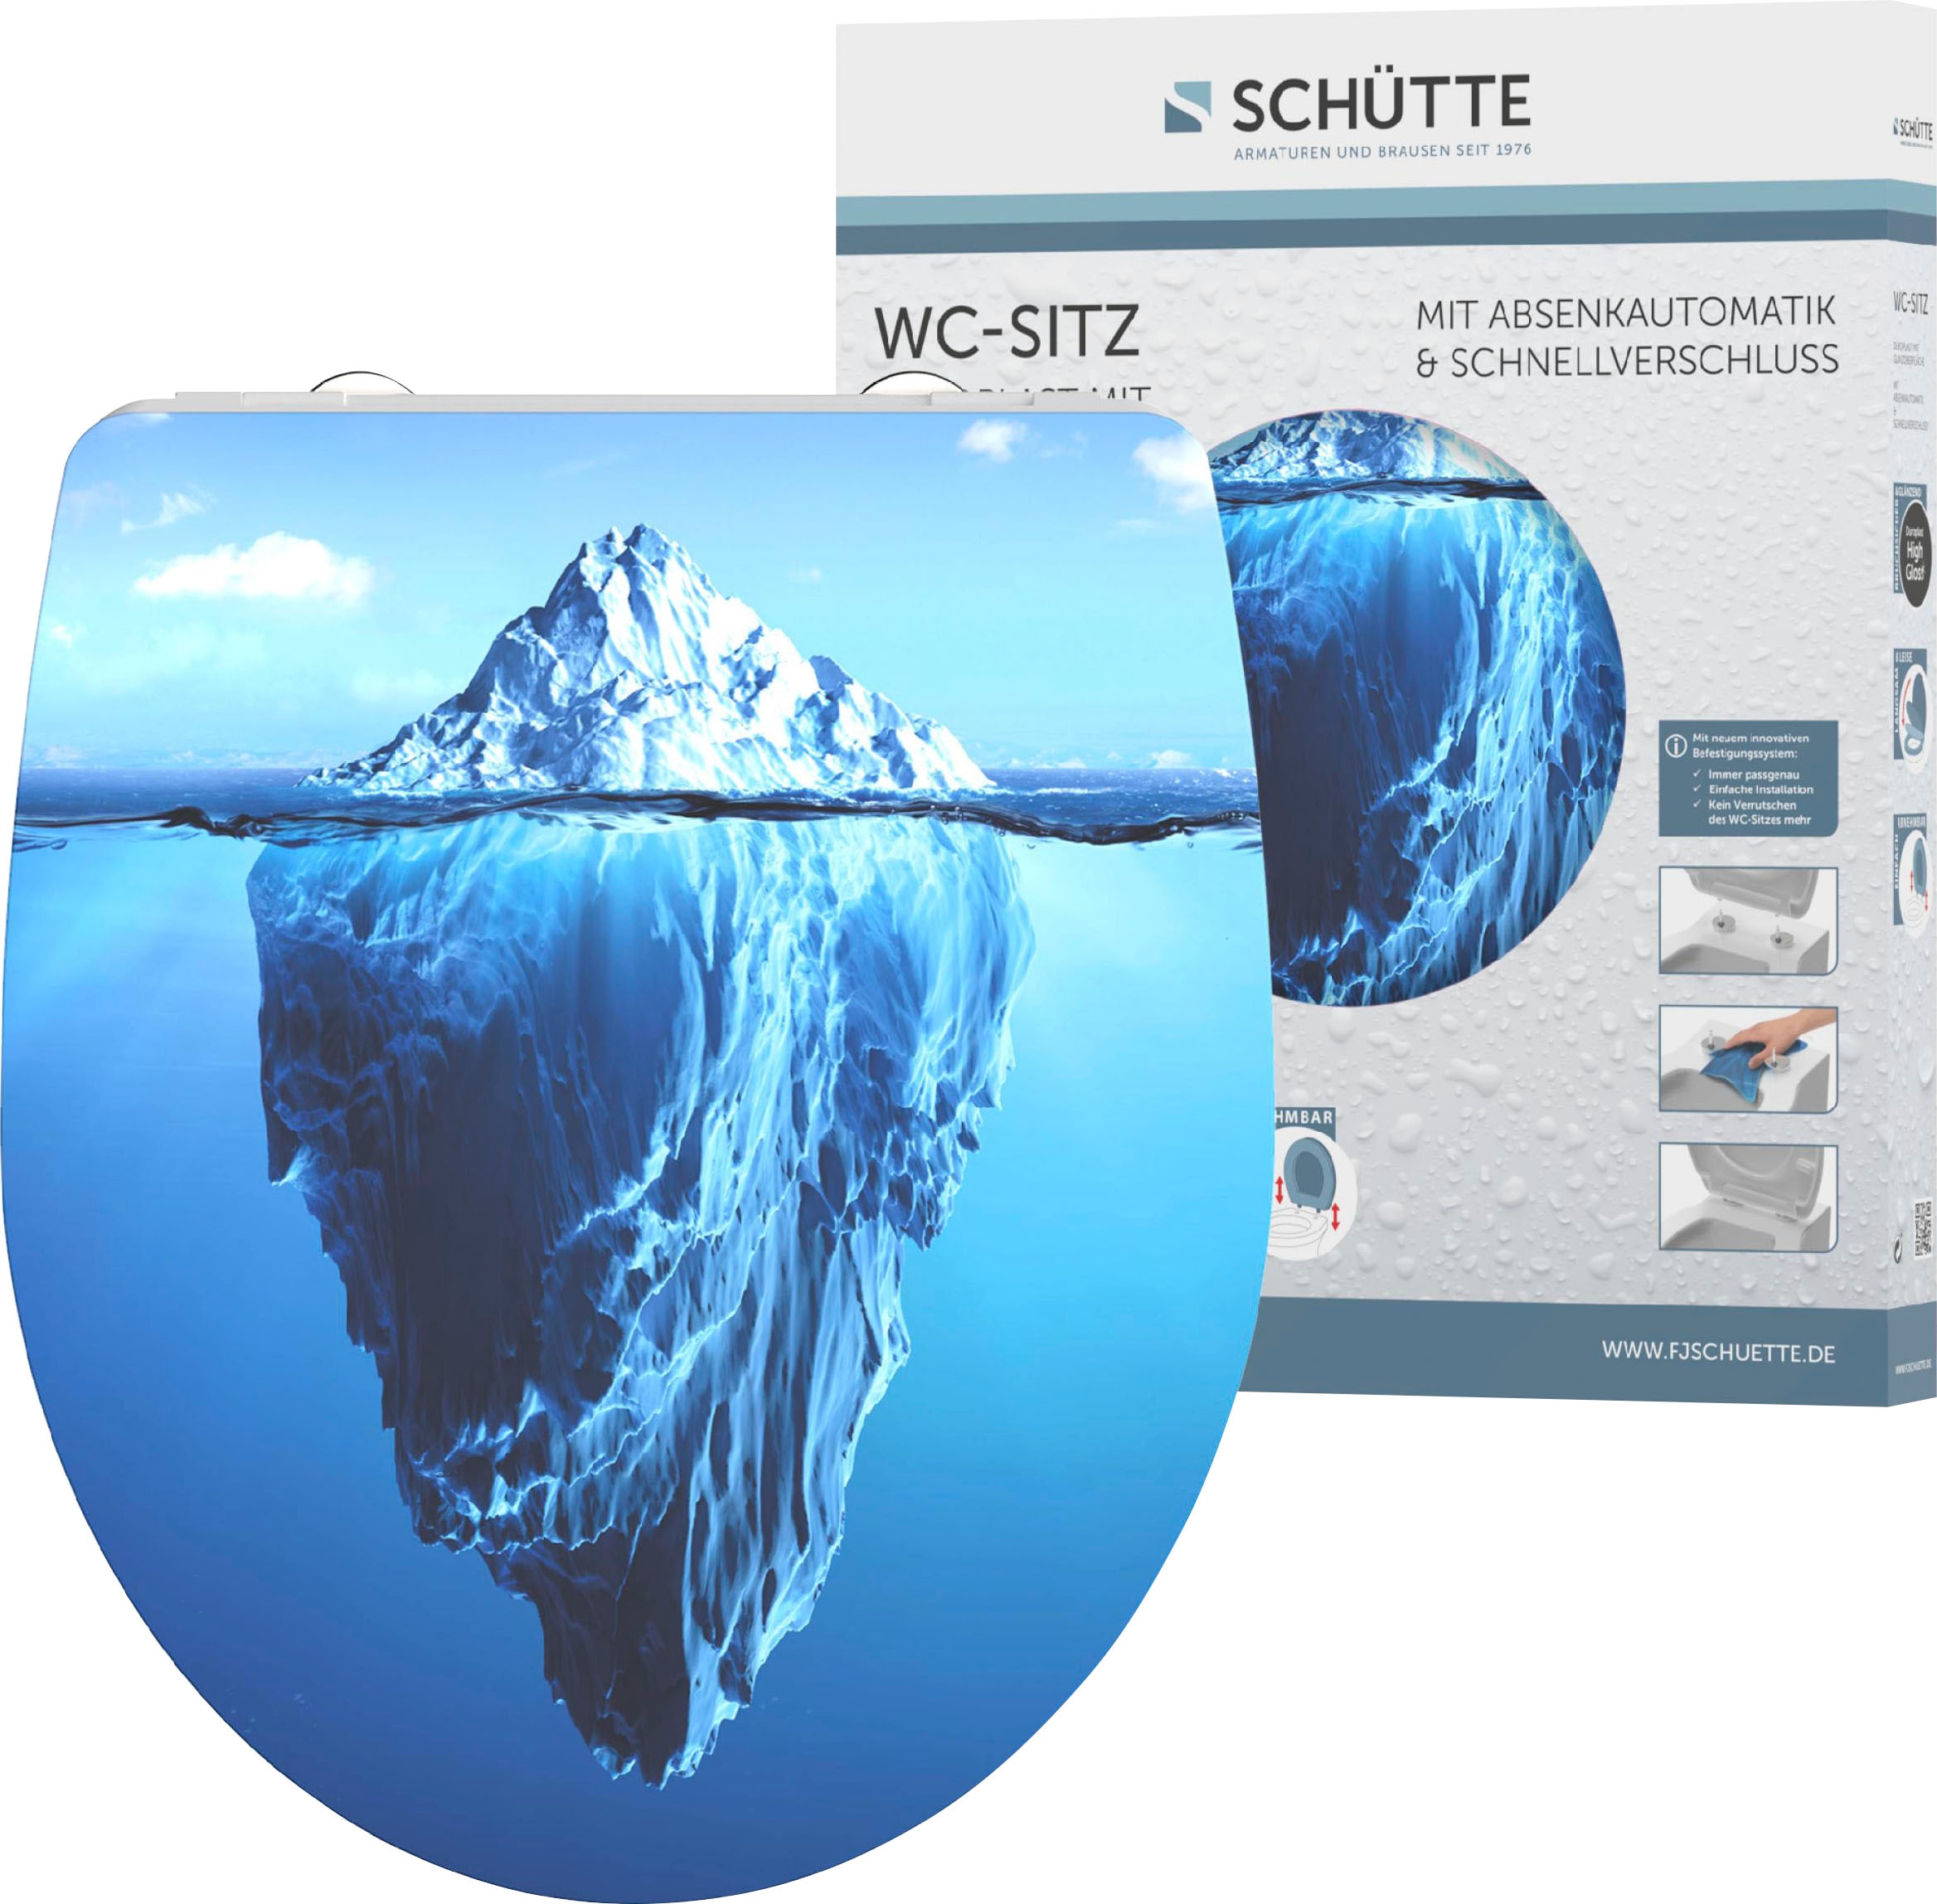 Schütte WC-Sitz "Iceberg", Duroplast, mit Absenkautomatik und Schnellverschluss, High Gloss